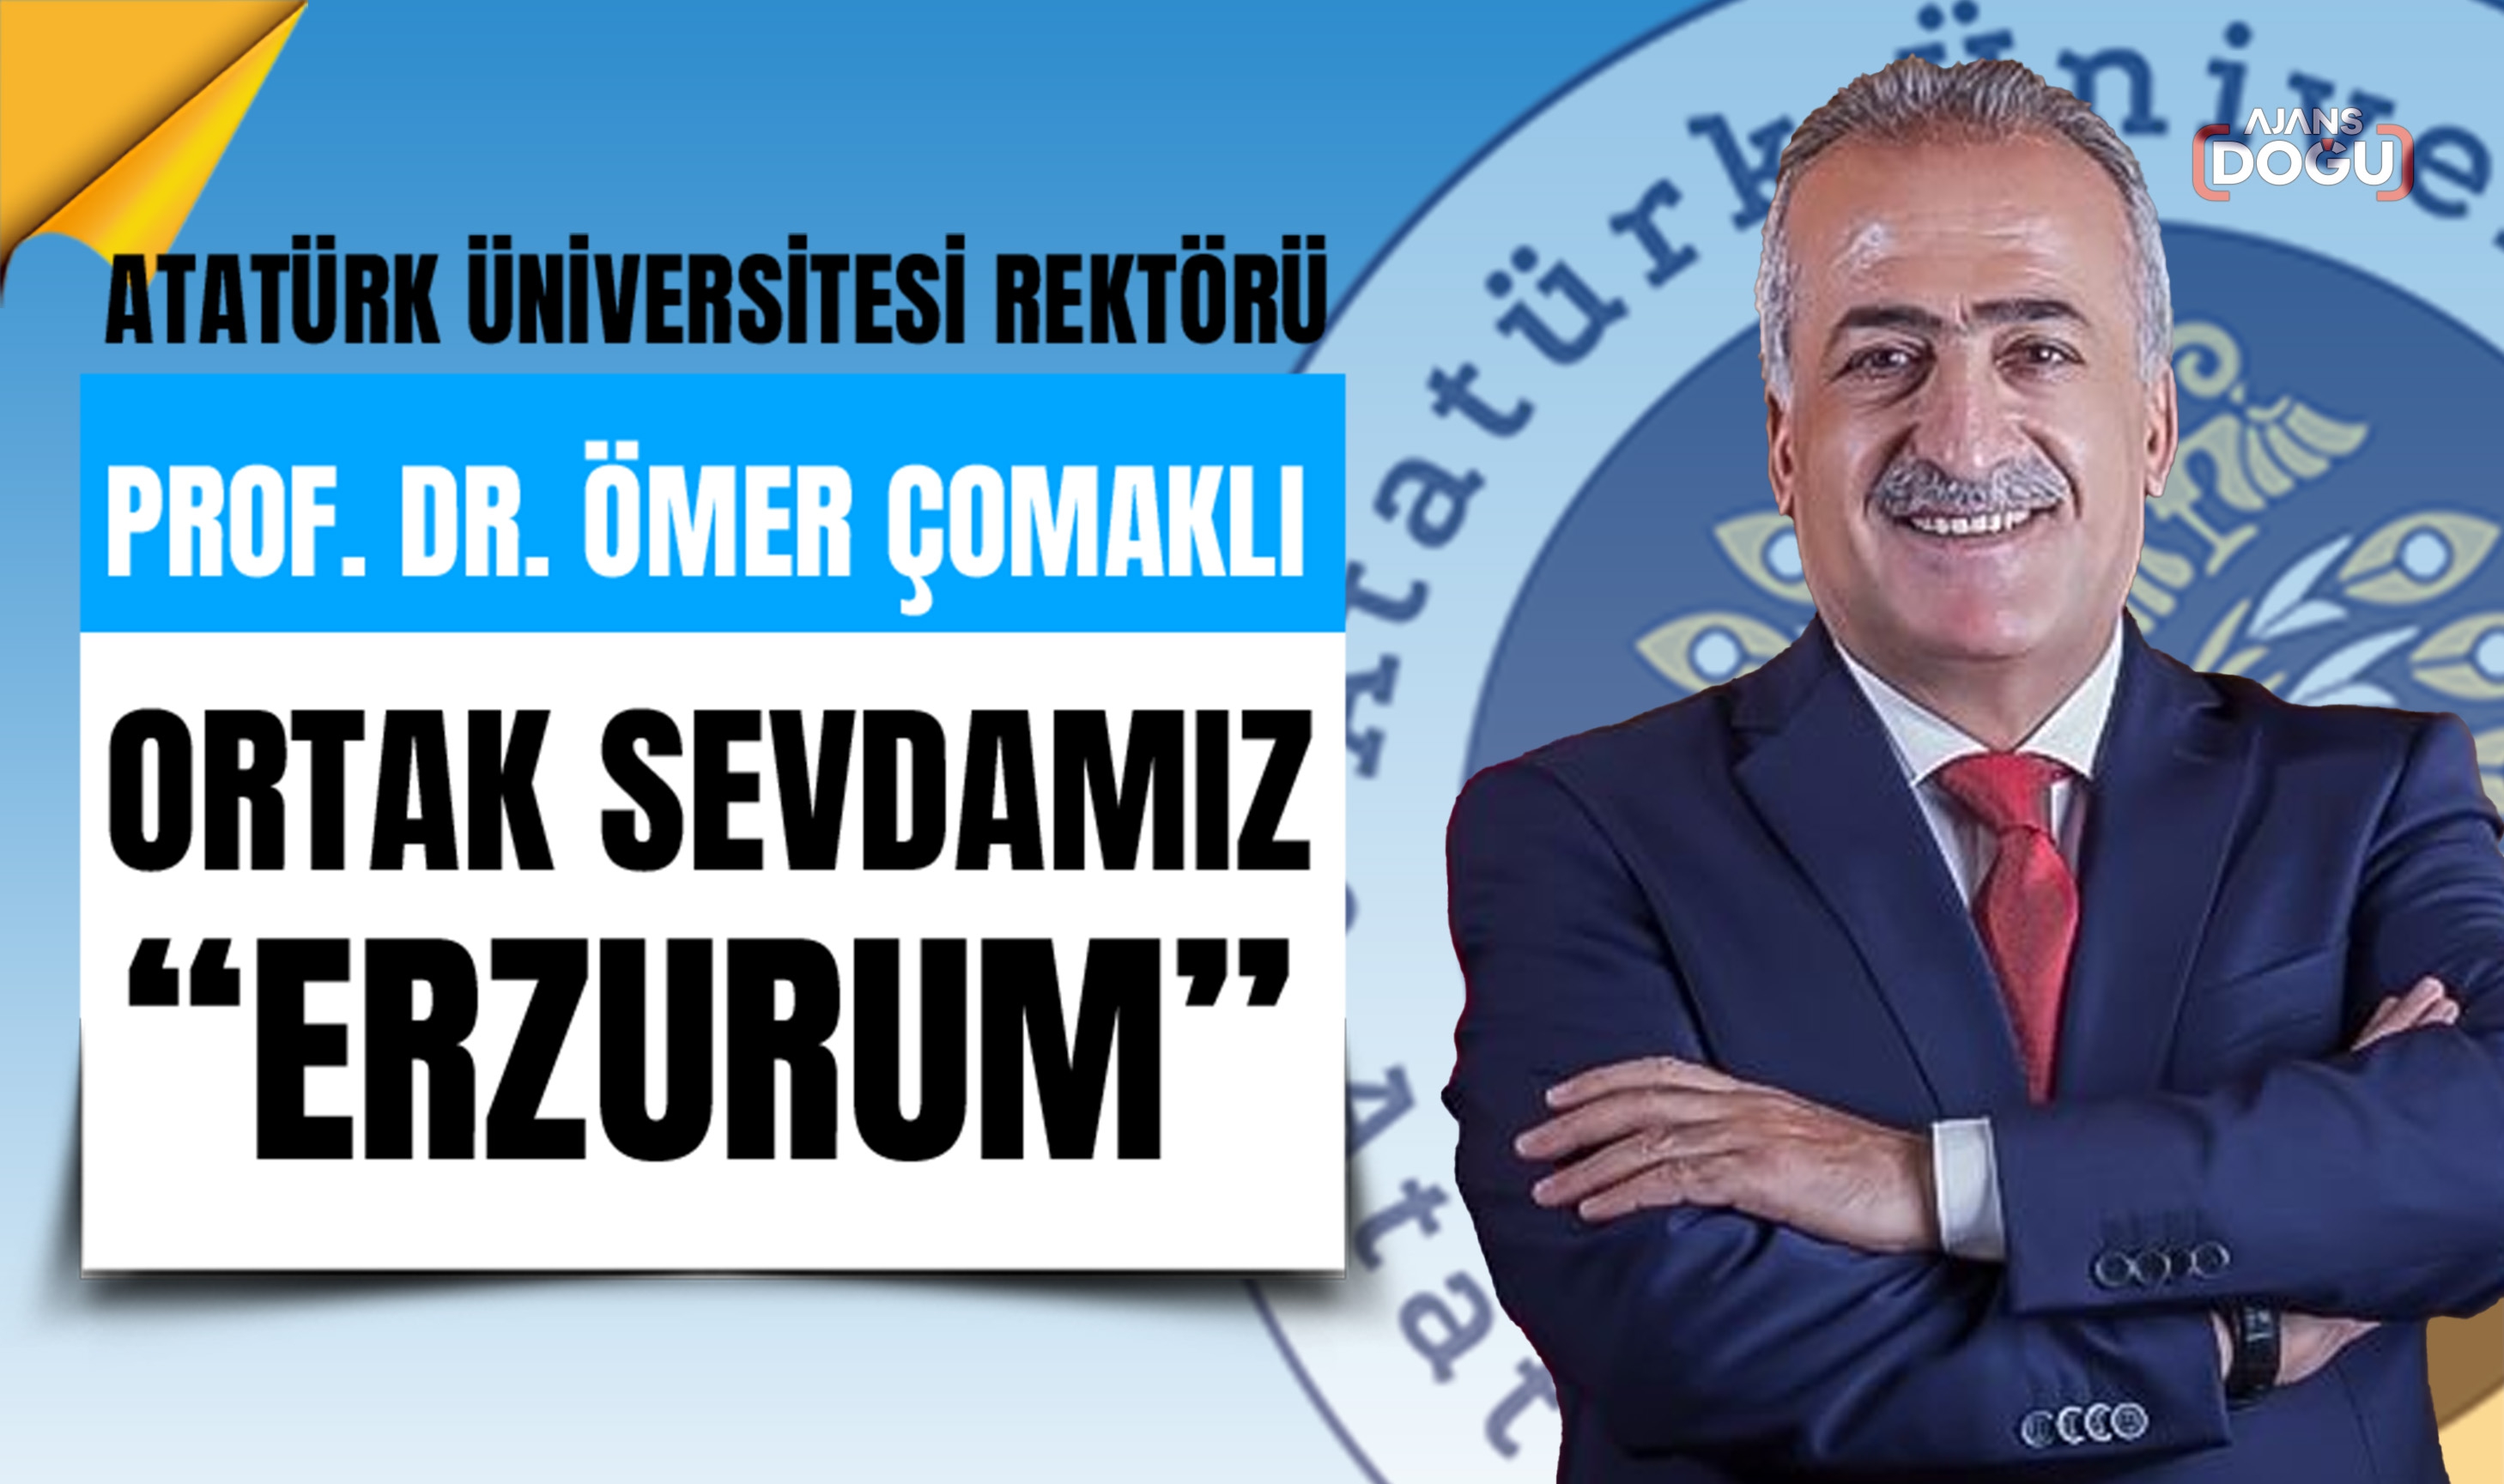 Rektör Çomaklı: “Ortak Sevdamız Erzurum”